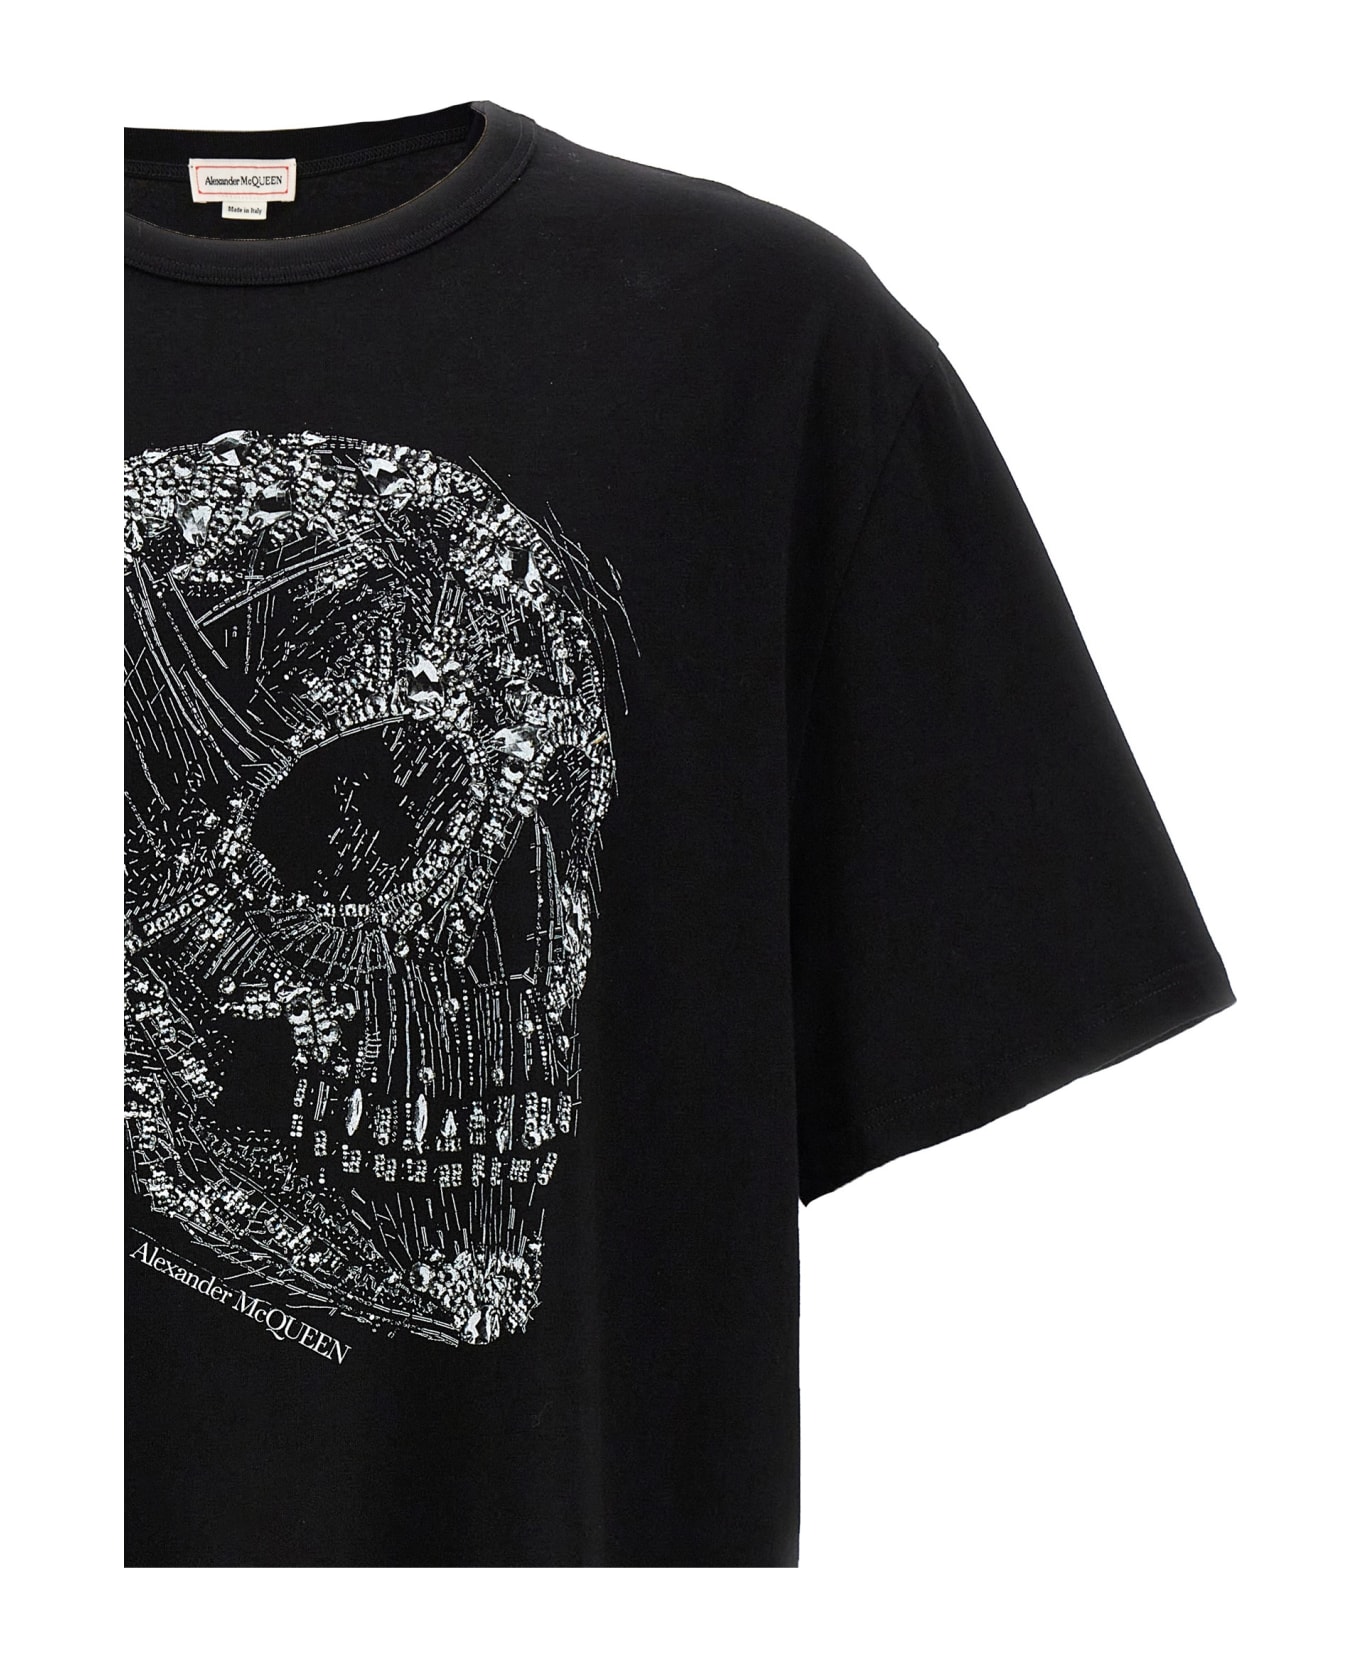 Alexander McQueen Skull Print T-shirt - Black シャツ